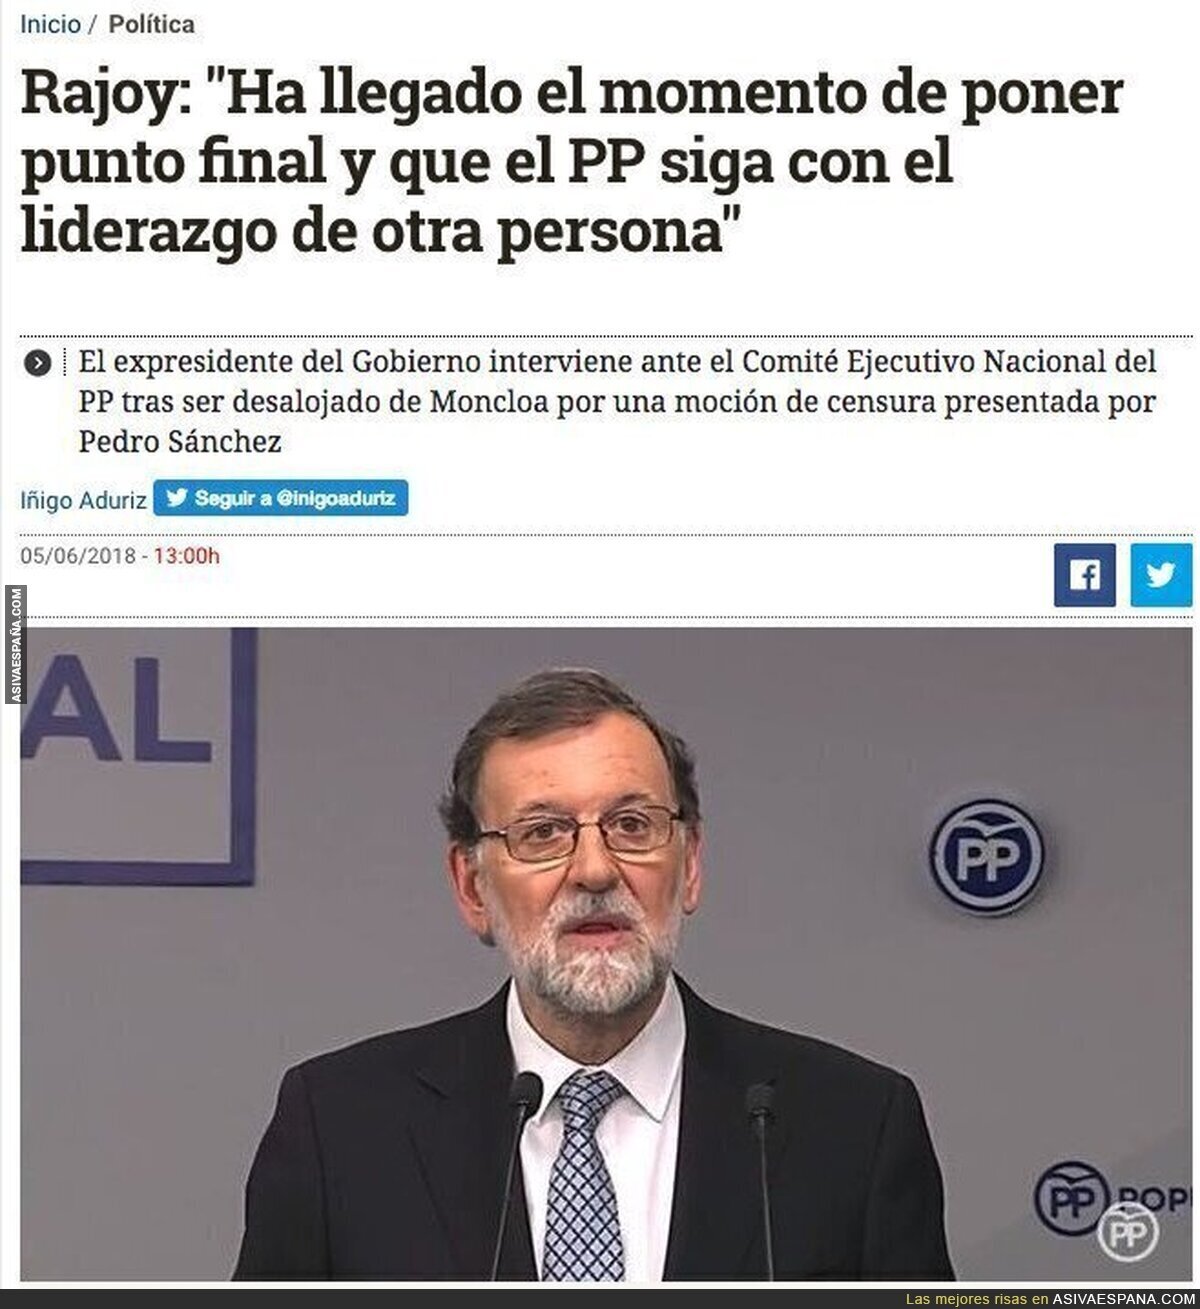 Se acabó la era de Rajoy